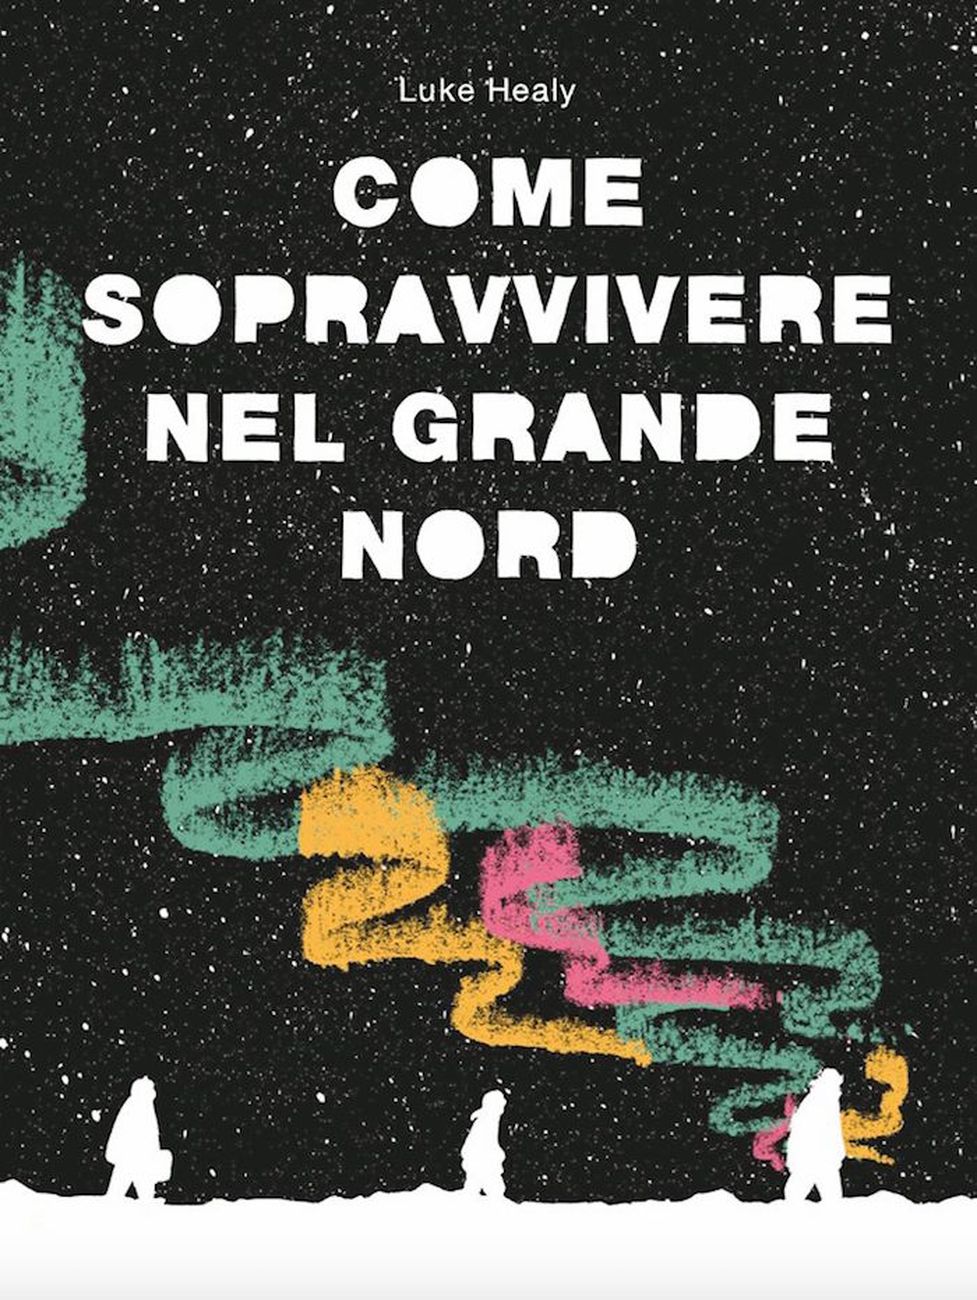 Luke Healy – Come sopravvivere nel grande nord (Coconino Press Fandango, Bologna 2018). Cover